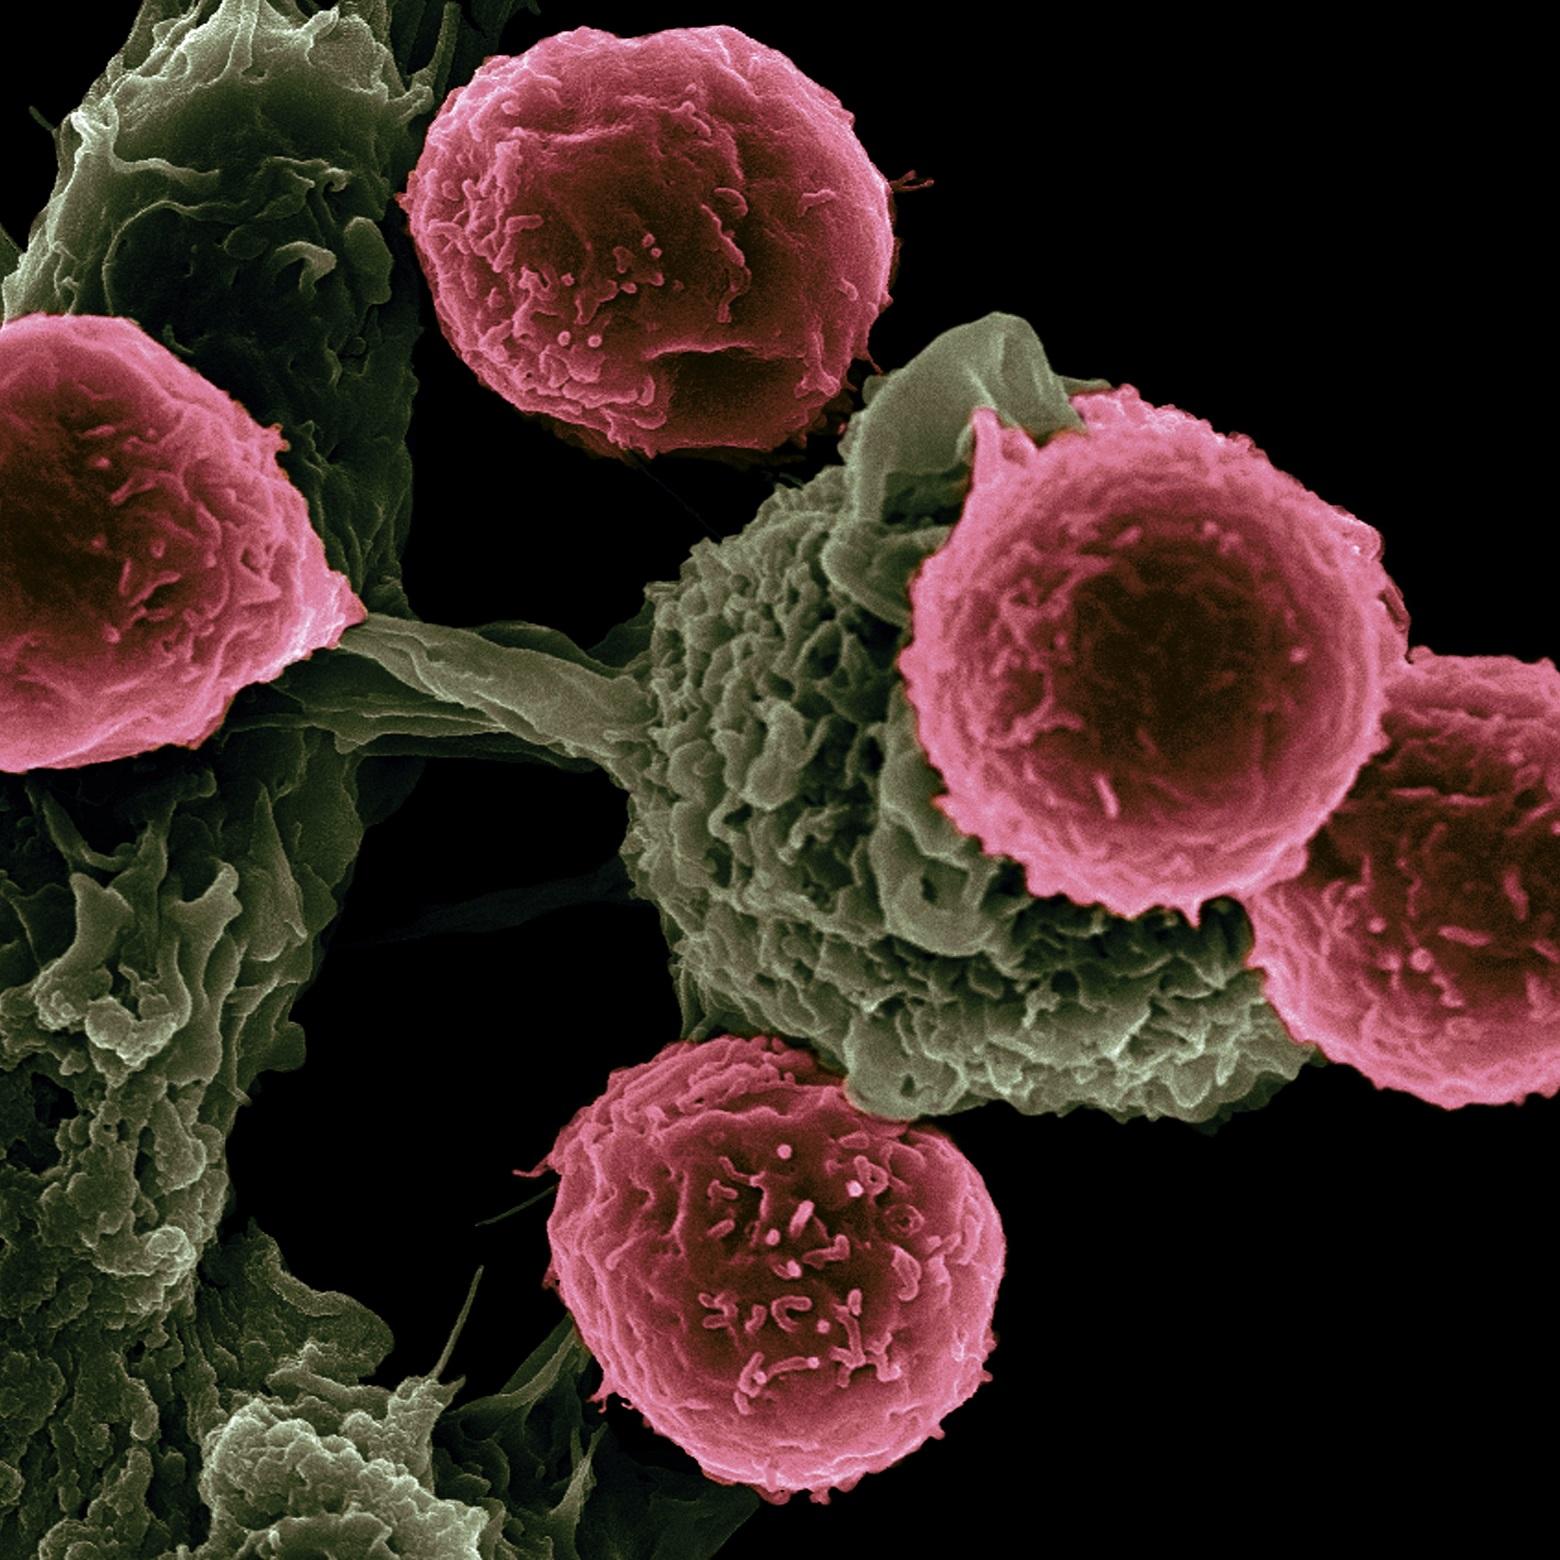 Sotrovimab-goedkeuring in het VK: een monoklonaal antilichaam dat effectief is tegen Omicron, werkt mogelijk ook voor toekomstige varianten